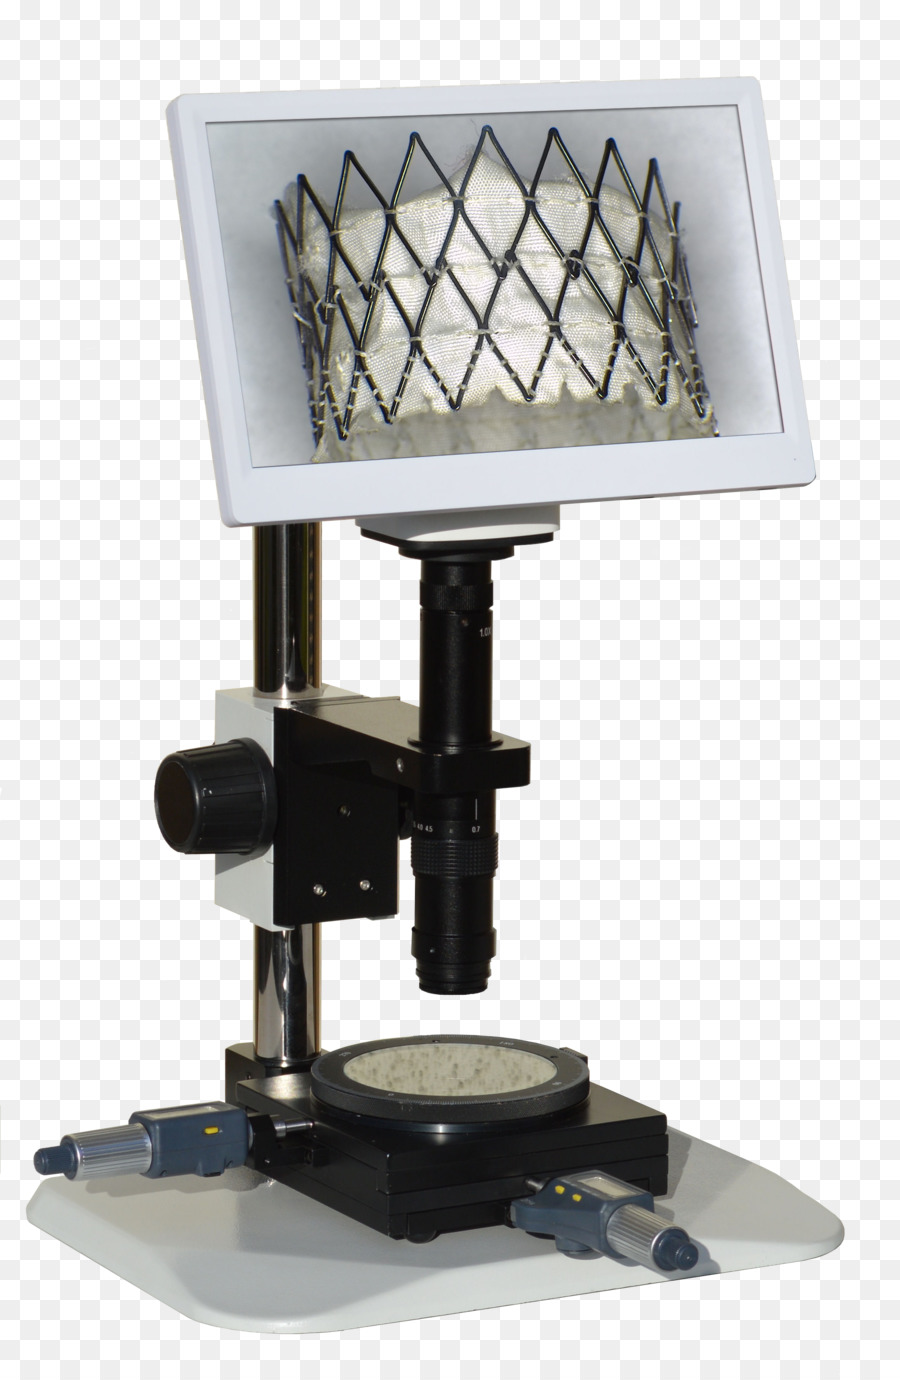 1080p ad Alta definizione, risoluzione video Digitale per microscopio - microscopio